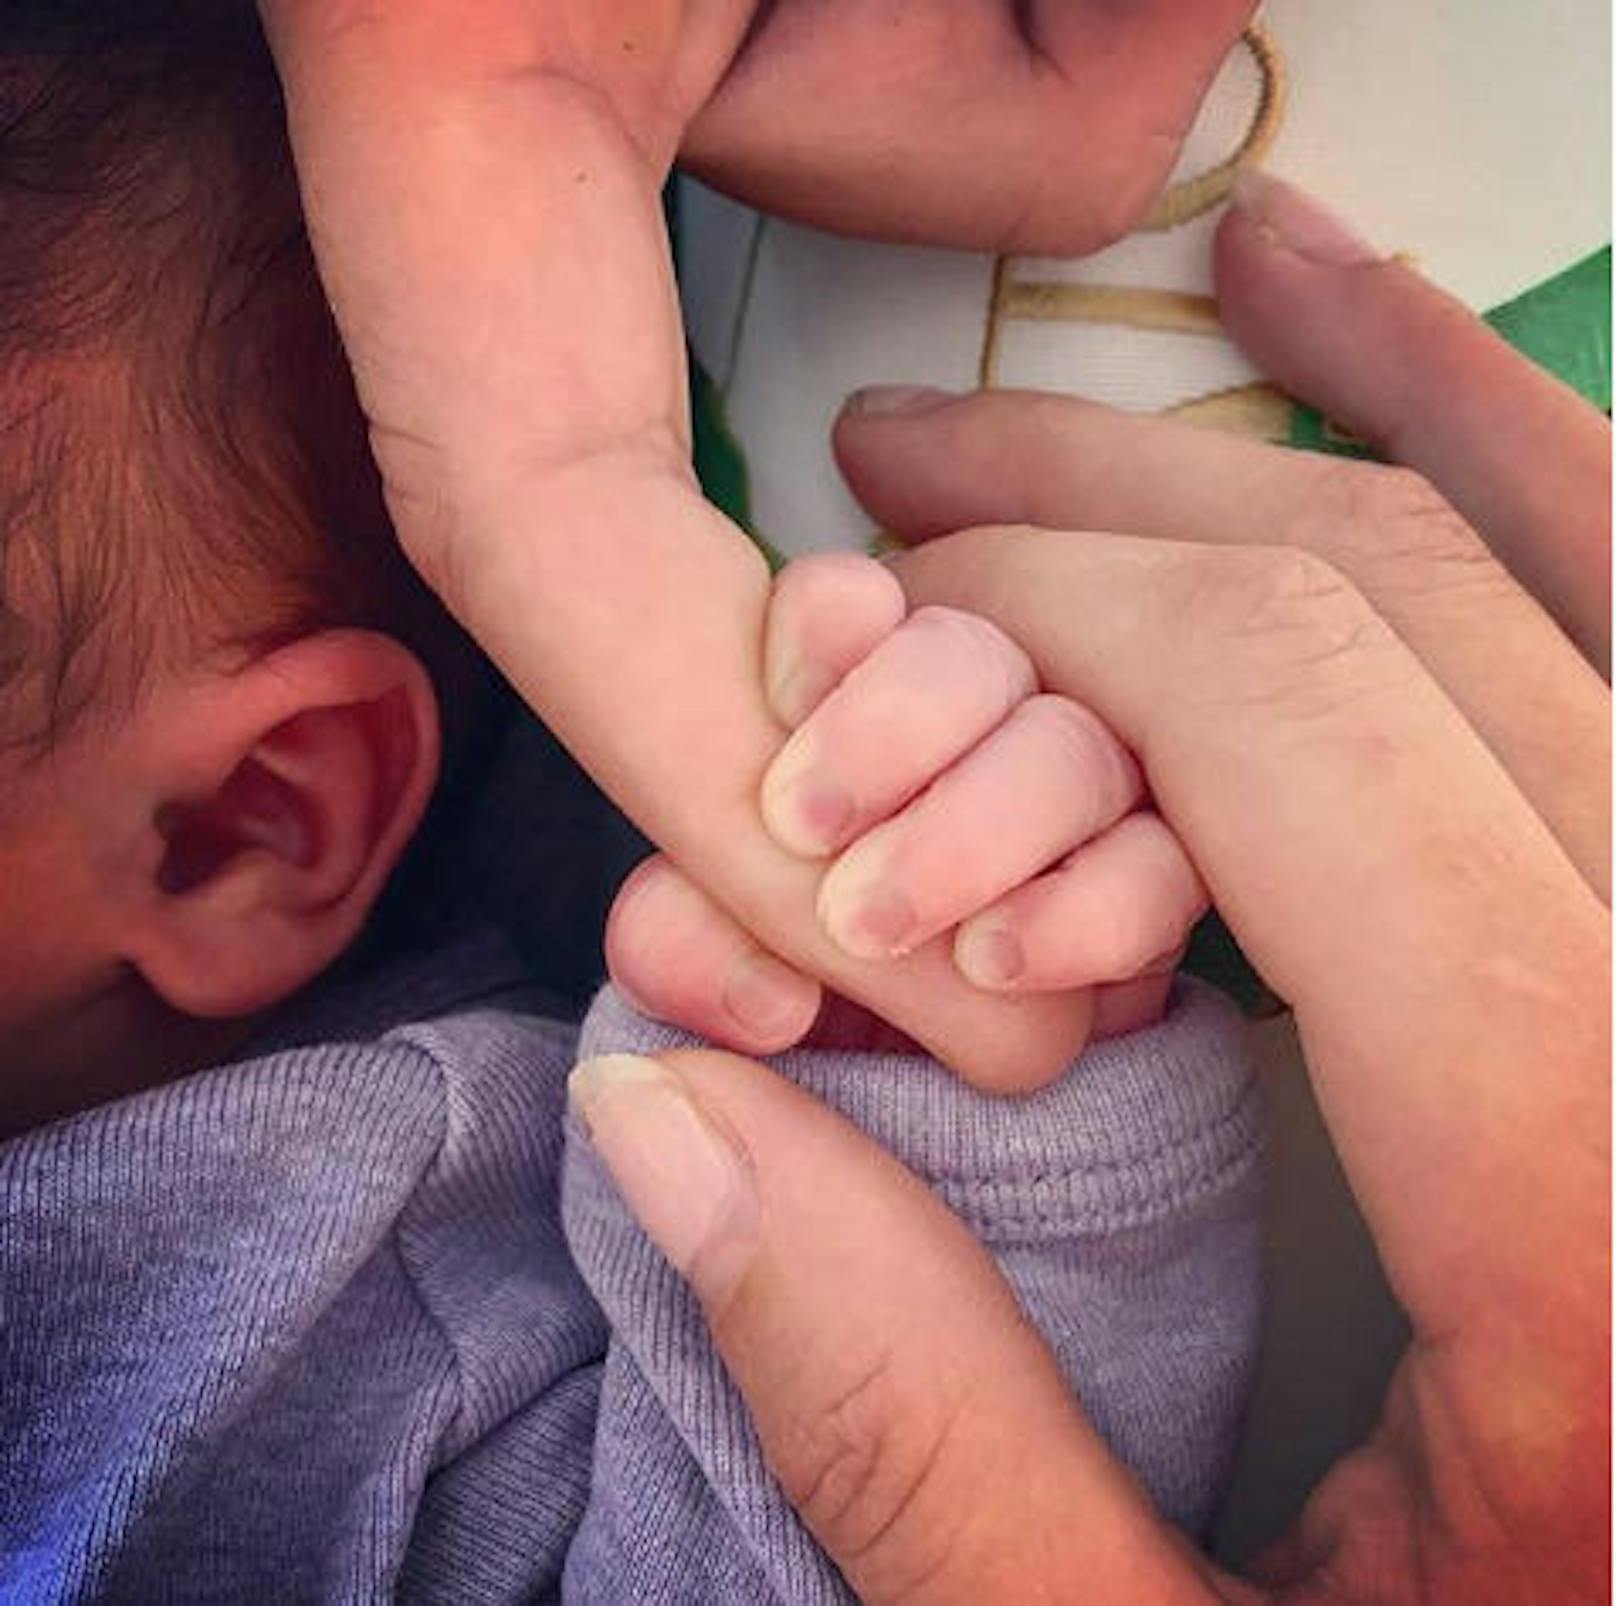 09.10.2018: "Suits"-Star Patrick J. Adams ist zum ersten Mal Vater geworden. "Ich könnte nicht aufgeregter sein, ein kleines Mädchen auf dieser Welt Willkommen zu heißen.", schrieb er zu diesem Foto. <a href="https://www.heute.at/people/stars/story/Patrick-J-Adams-Suits-Darsteller-Baby-Ehefrau-Instagram-54469158">Den Artikel dazu finden Sie hier</a>